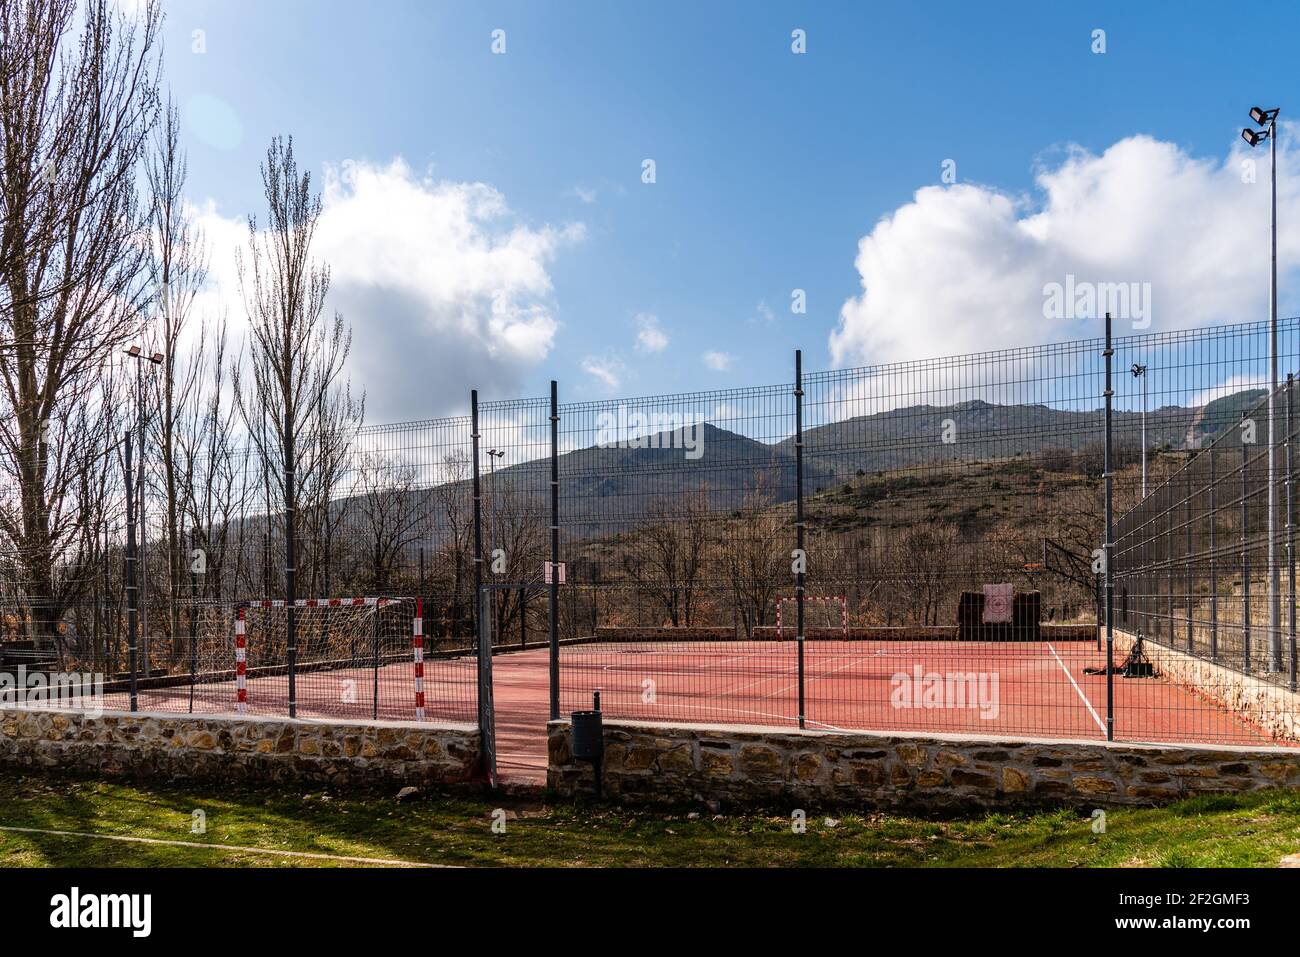 Terrain multi-sports dans le village au milieu des montagnes. Banque D'Images